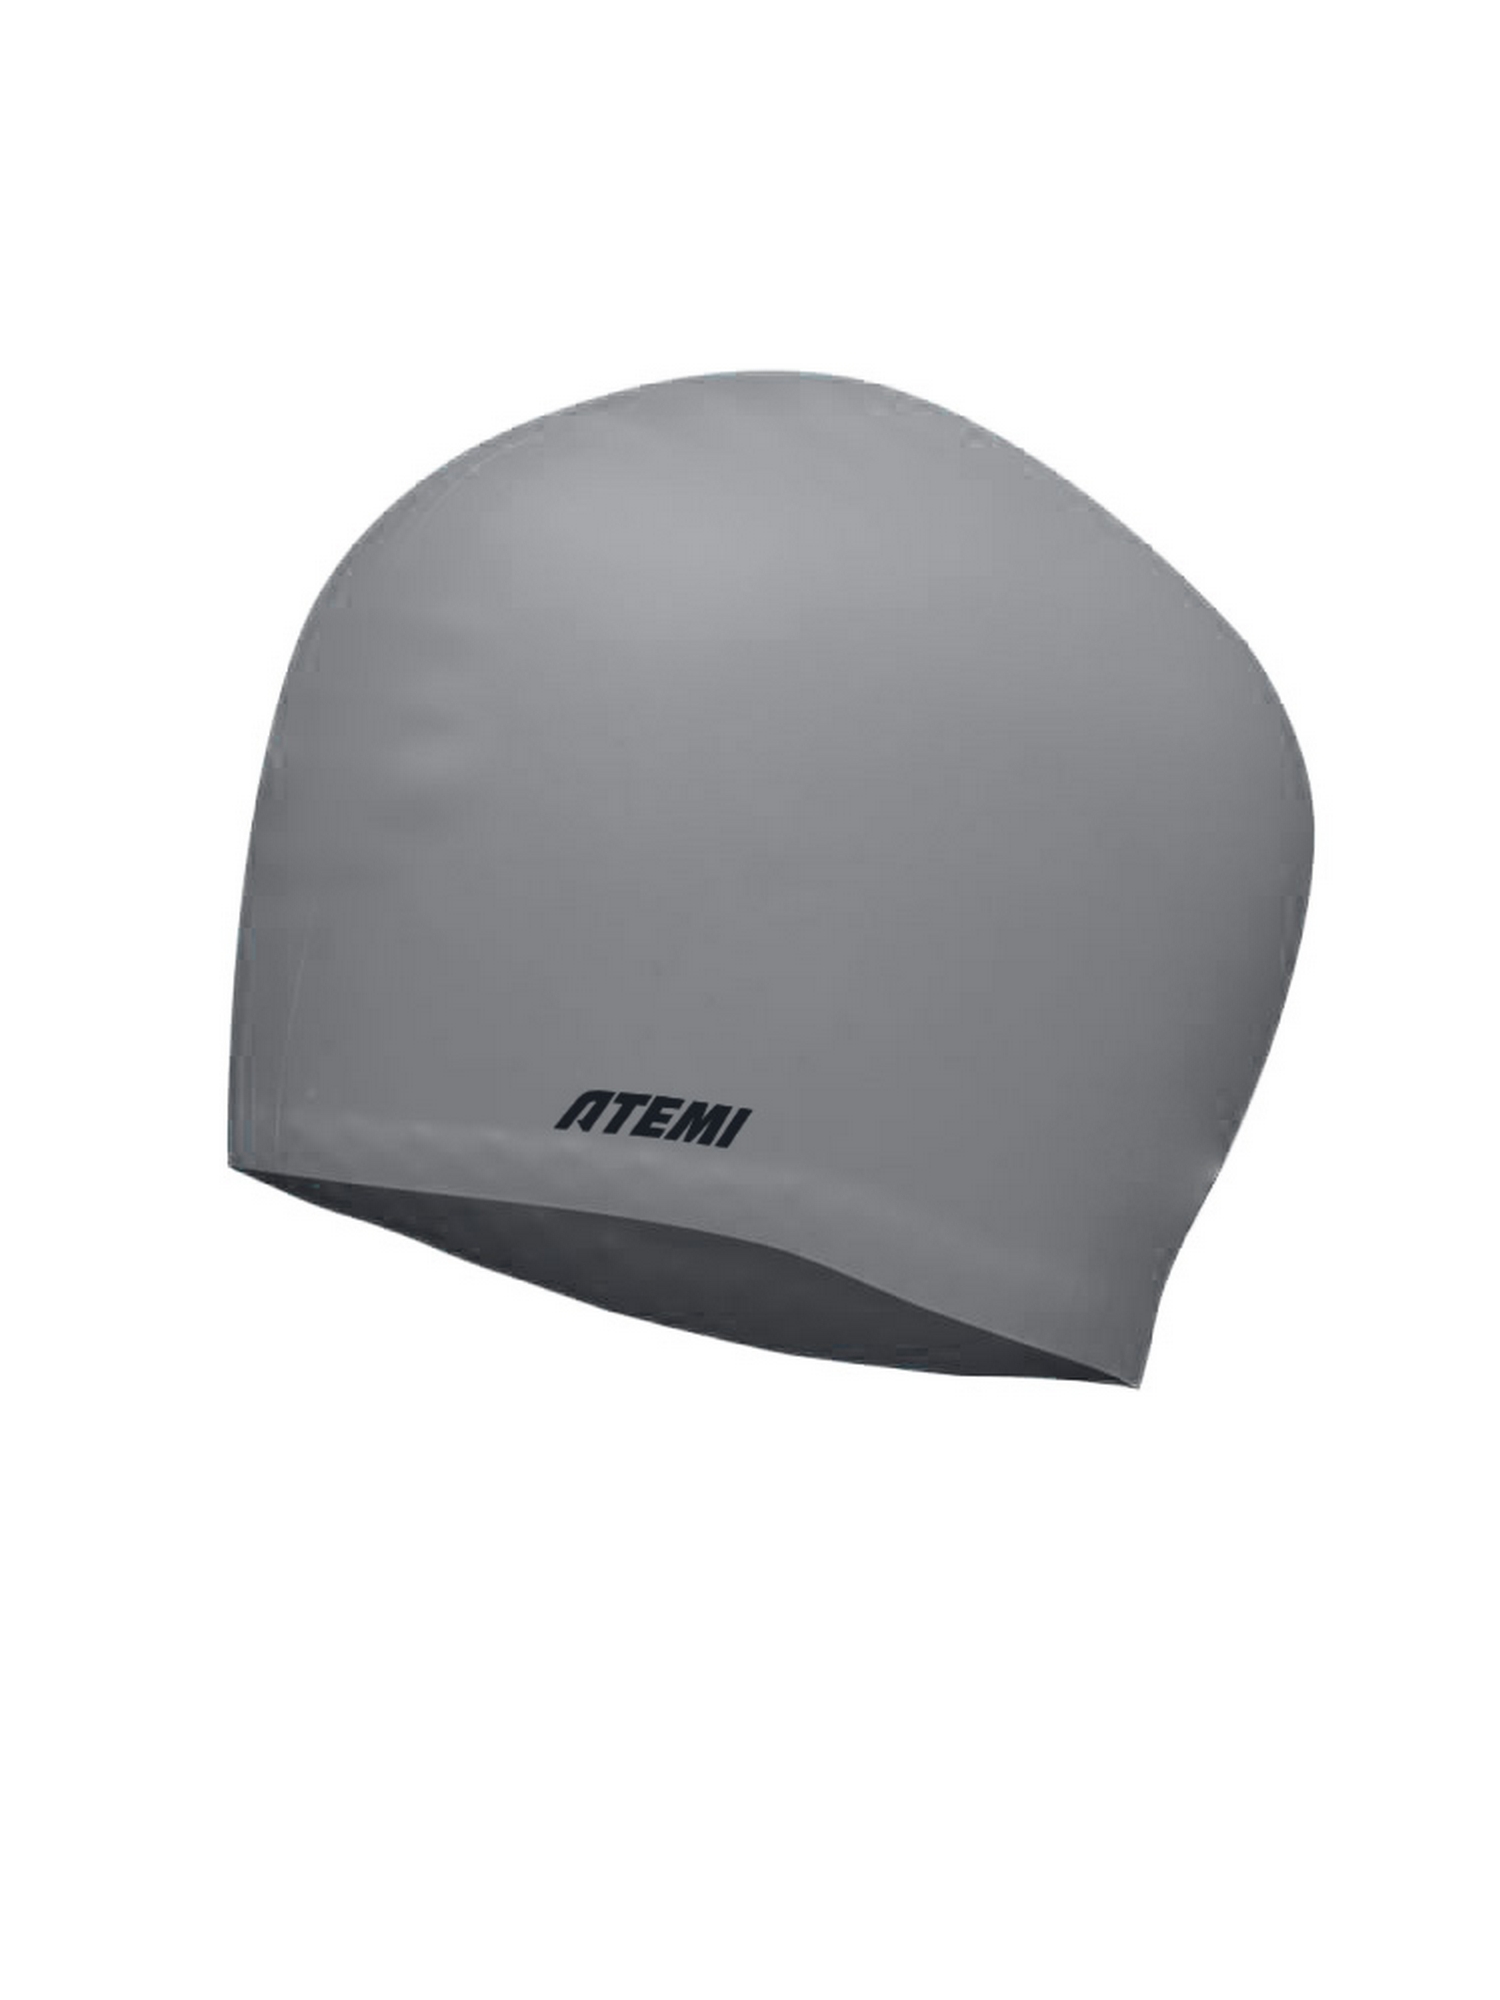 Шапочка для плавания Atemi long hair cap Asphalt grey TLH1GY серый 1500_2000